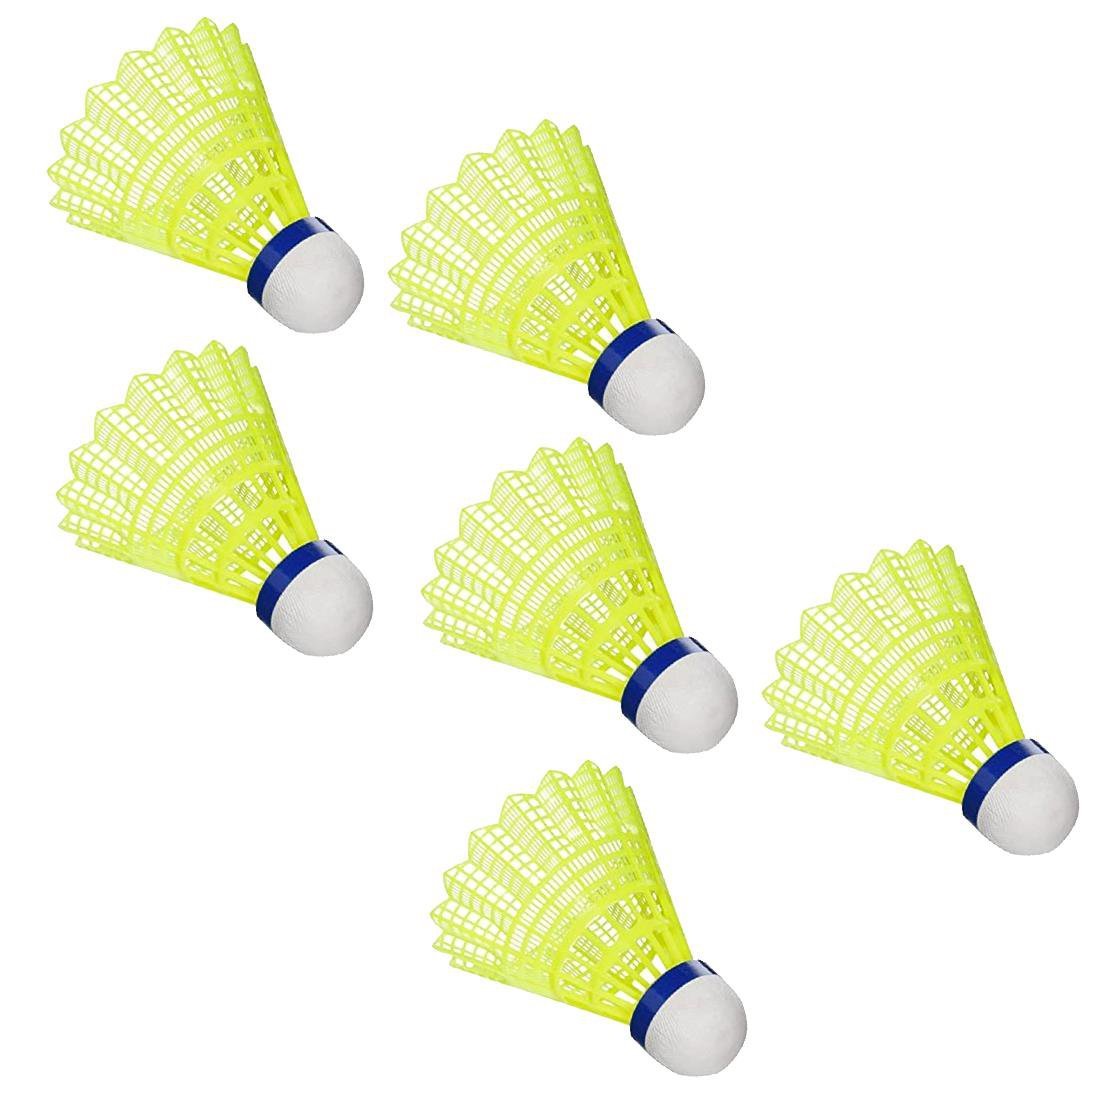 Peteca Badminton de Nylon e Espuma A100 Pack 6 Unidades Aoliante - Amarelo - 2